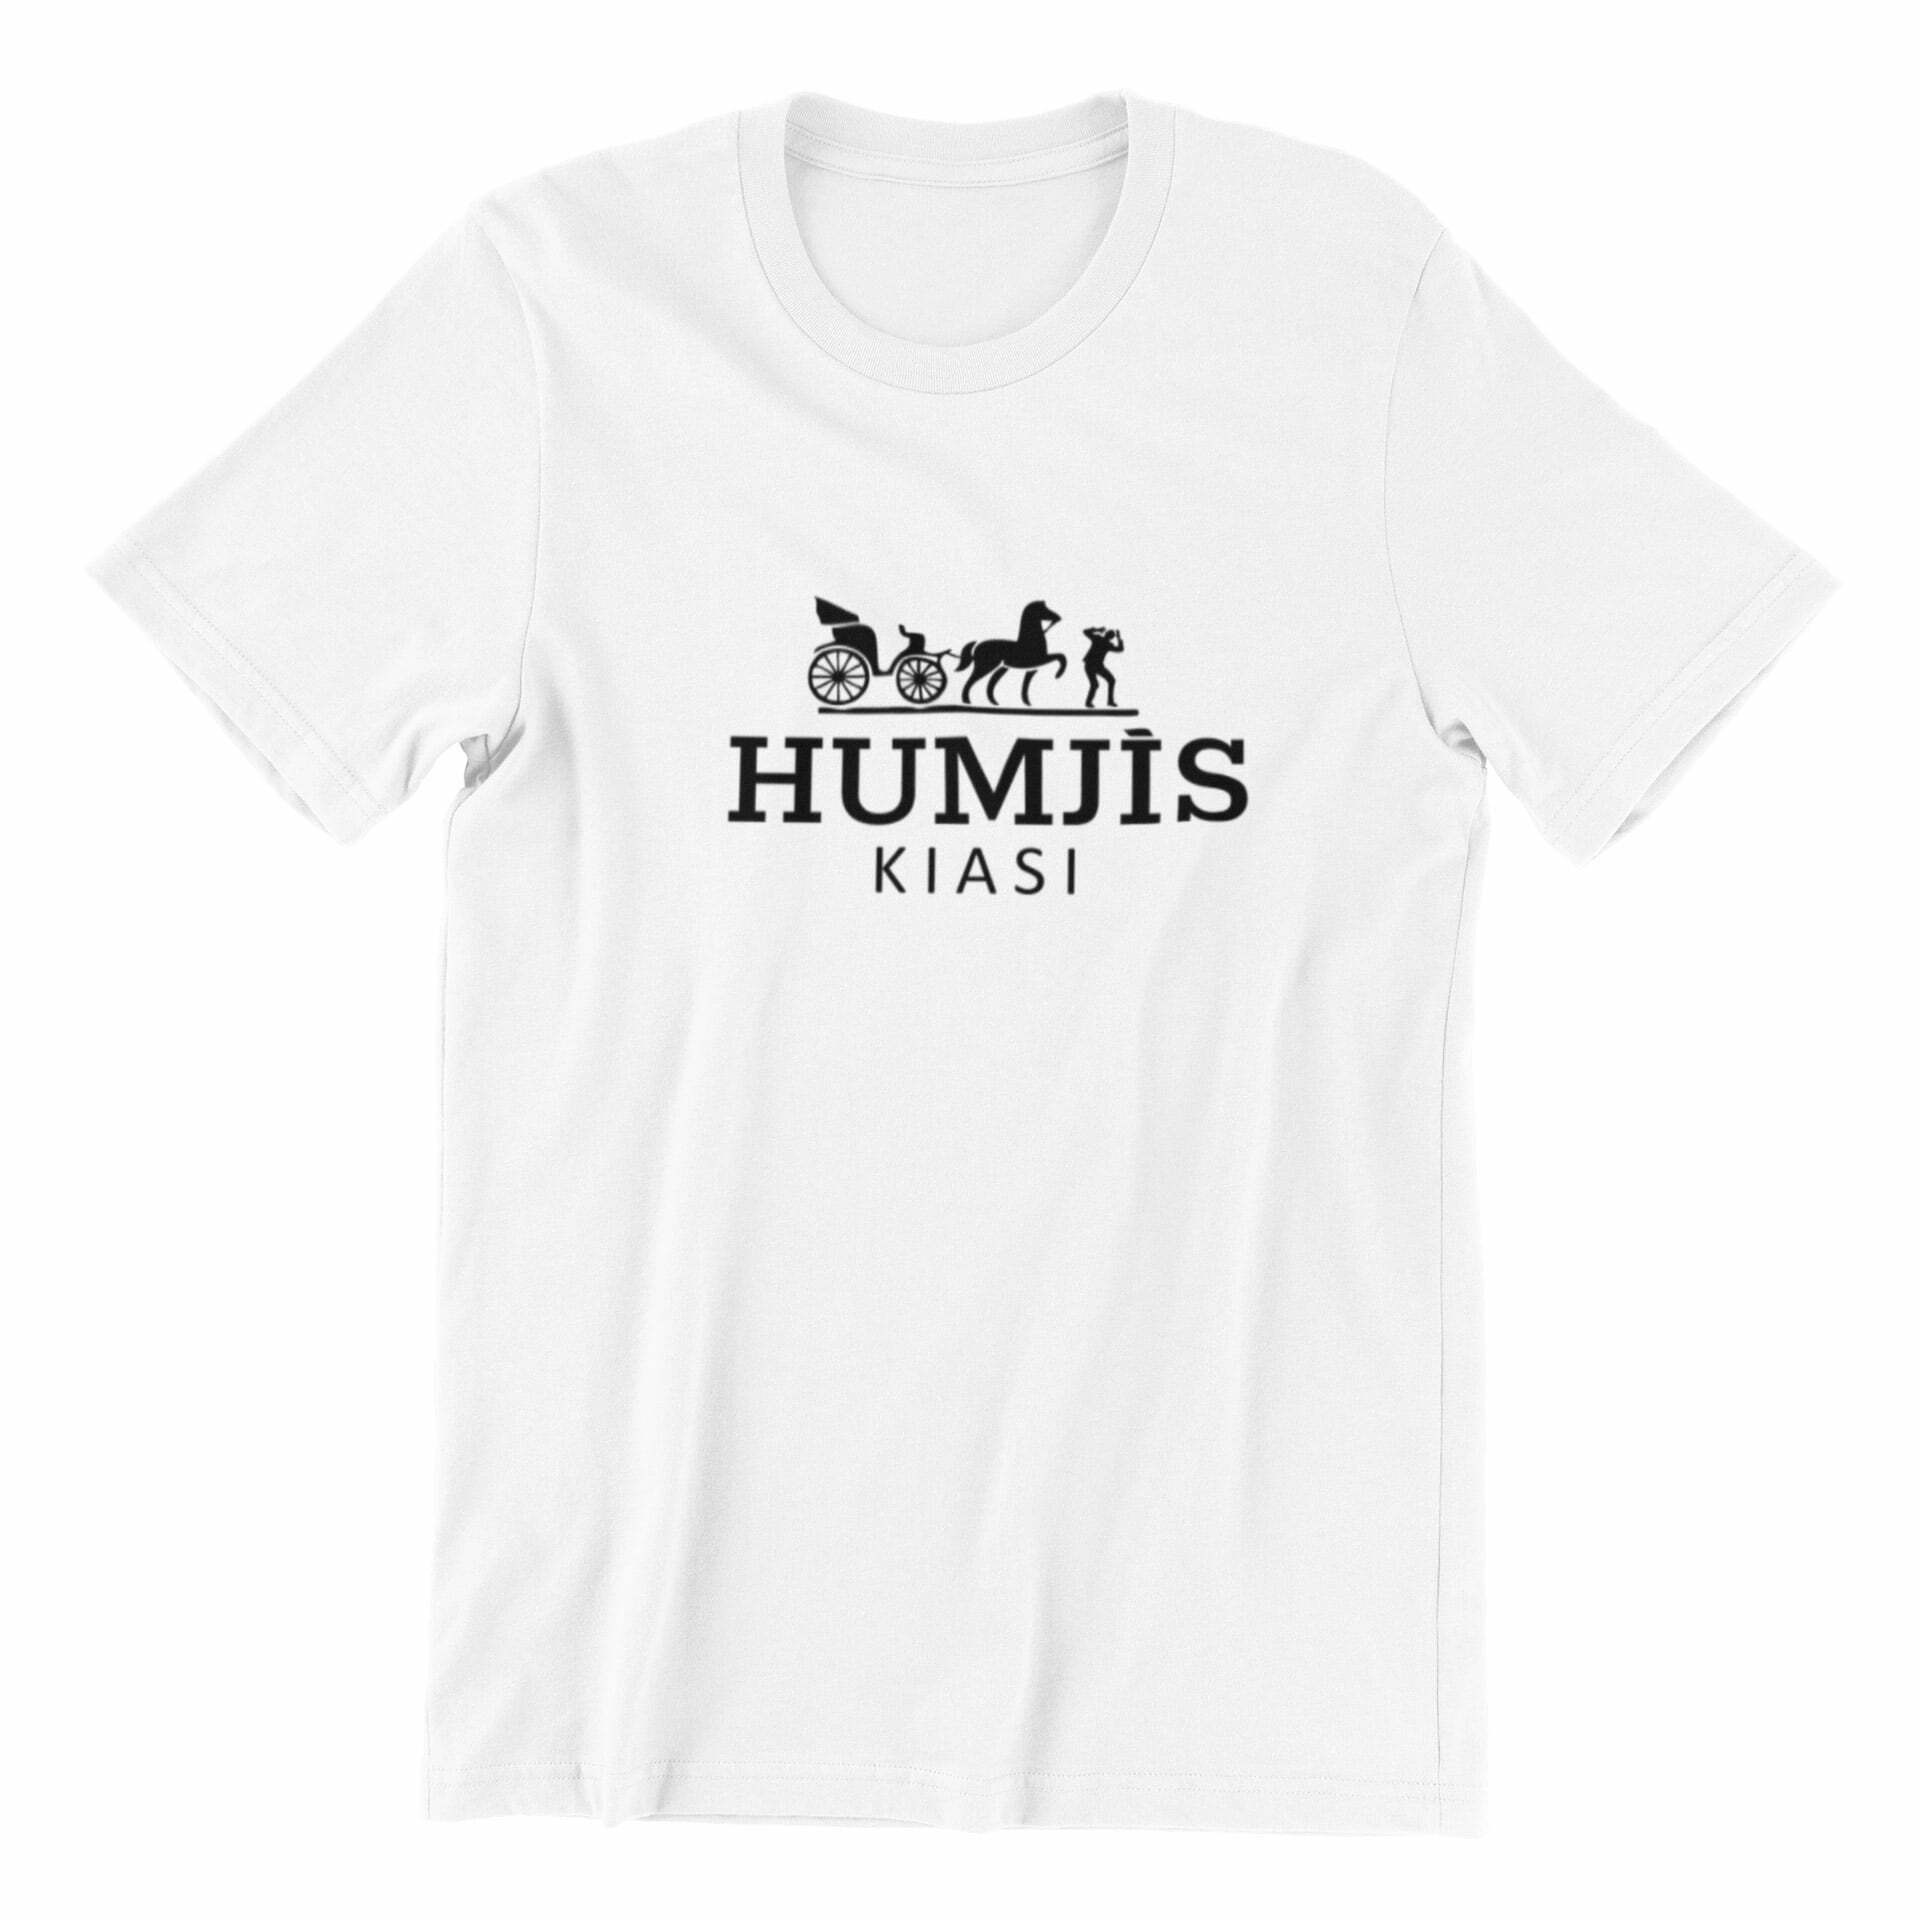 Humji T-shirt - Singapore Streetwear Tshirt Designer | Kaobeiking